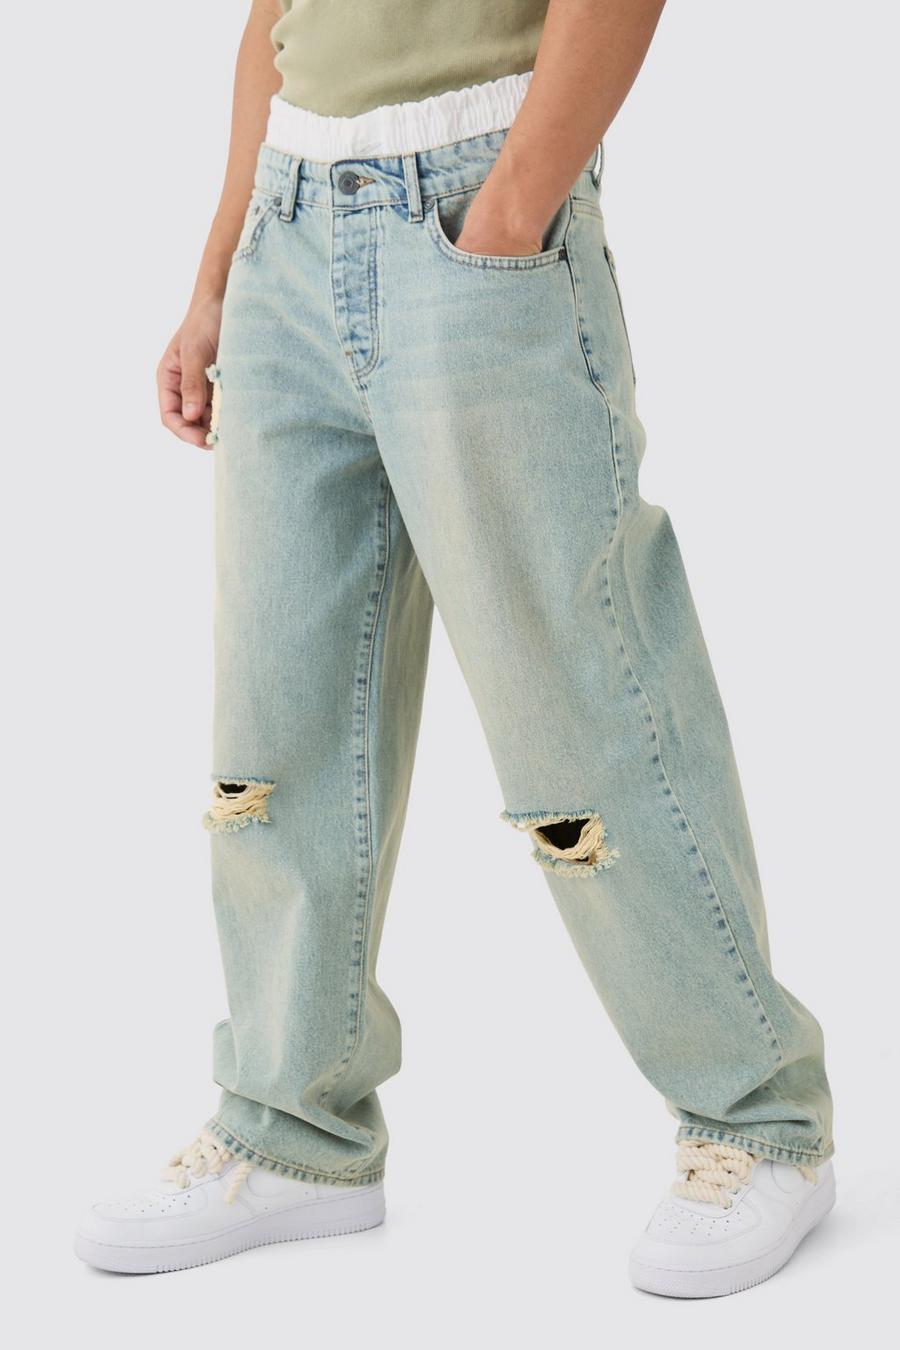 Lockere Boxer-Jeans mit Bund und Riss am Knie, Antique blue